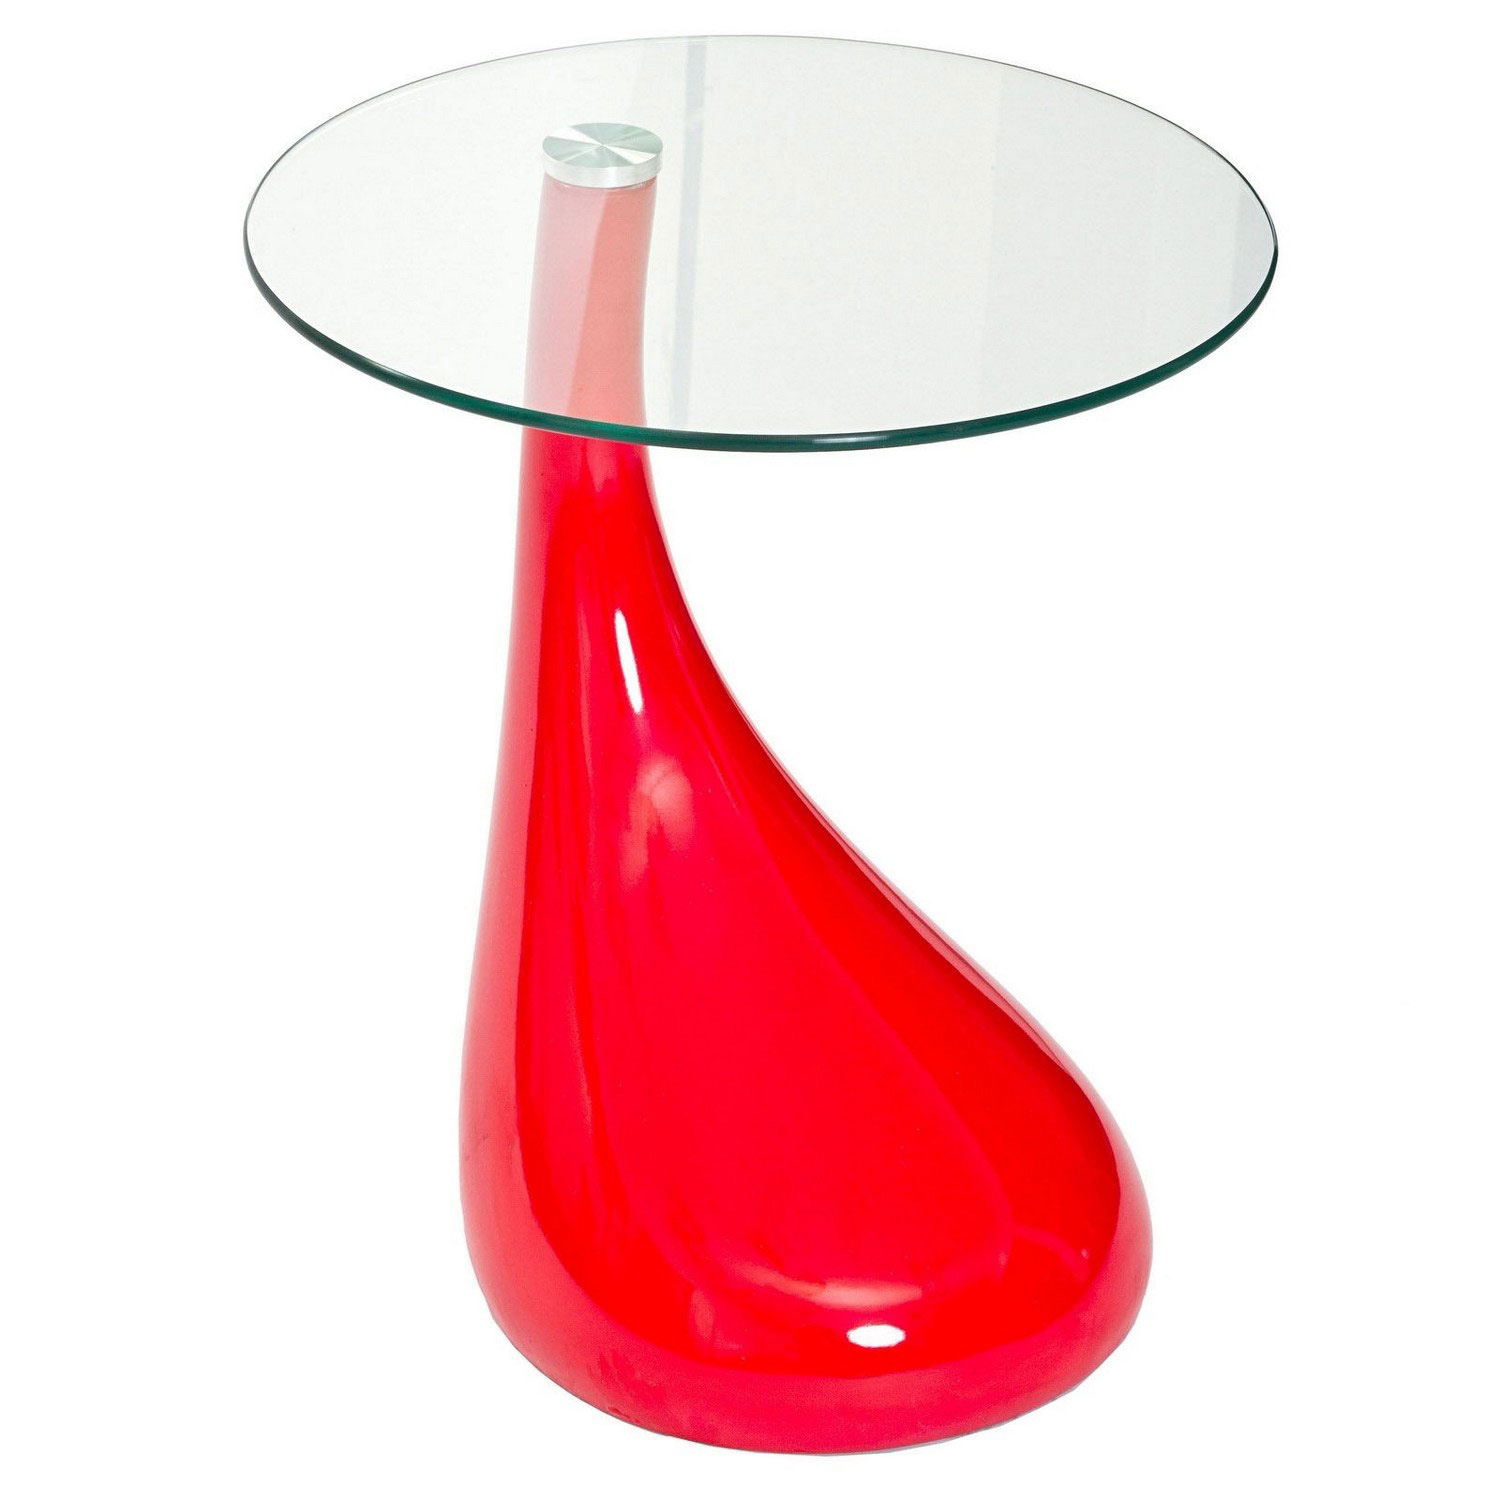 Modway Teardrop Side Table - Red